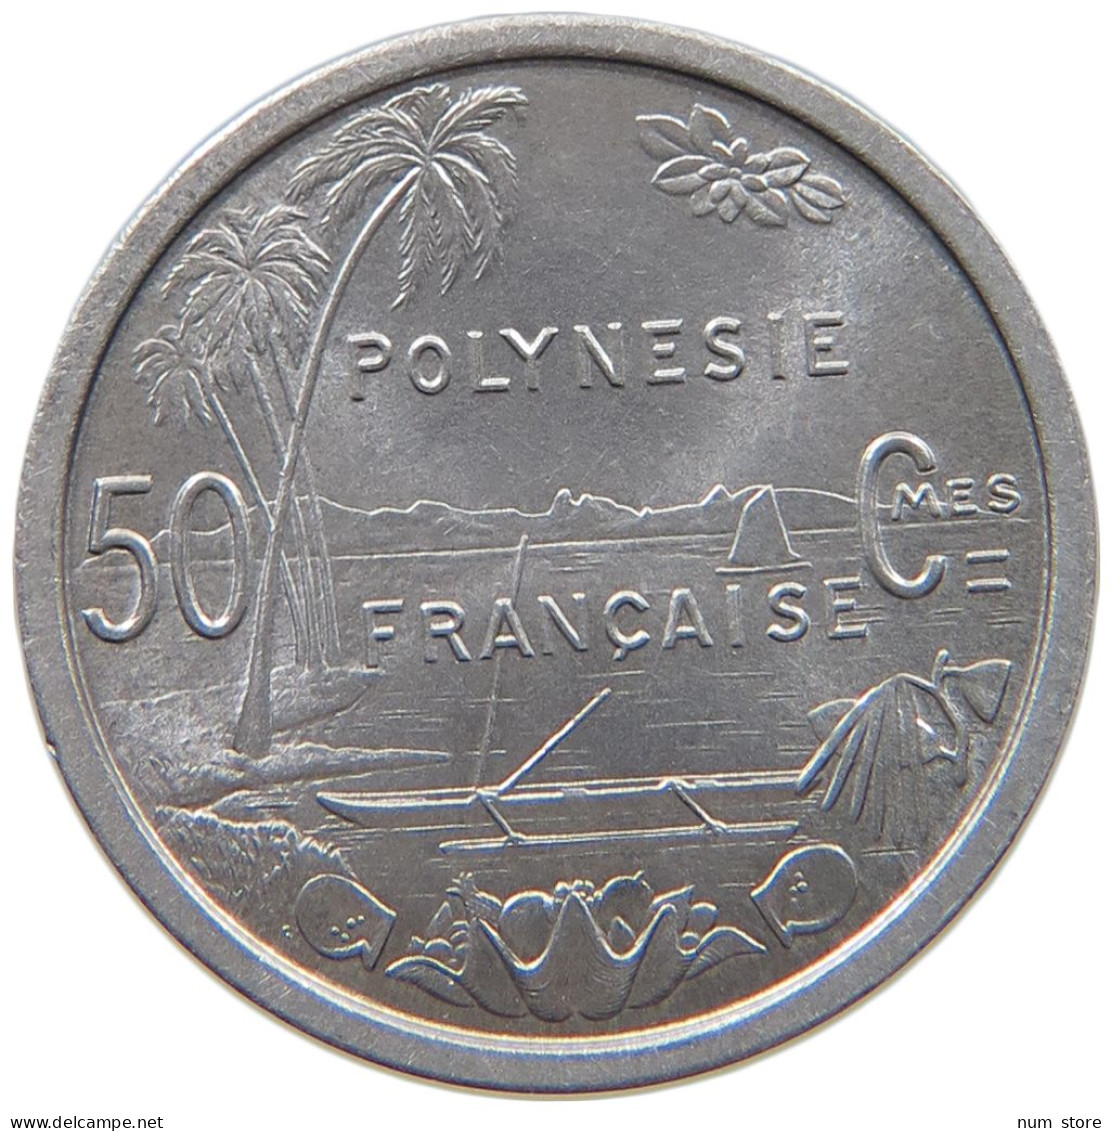 POLYNESIA 50 CENTIMES 1965  #c040 0749 - Französisch-Polynesien